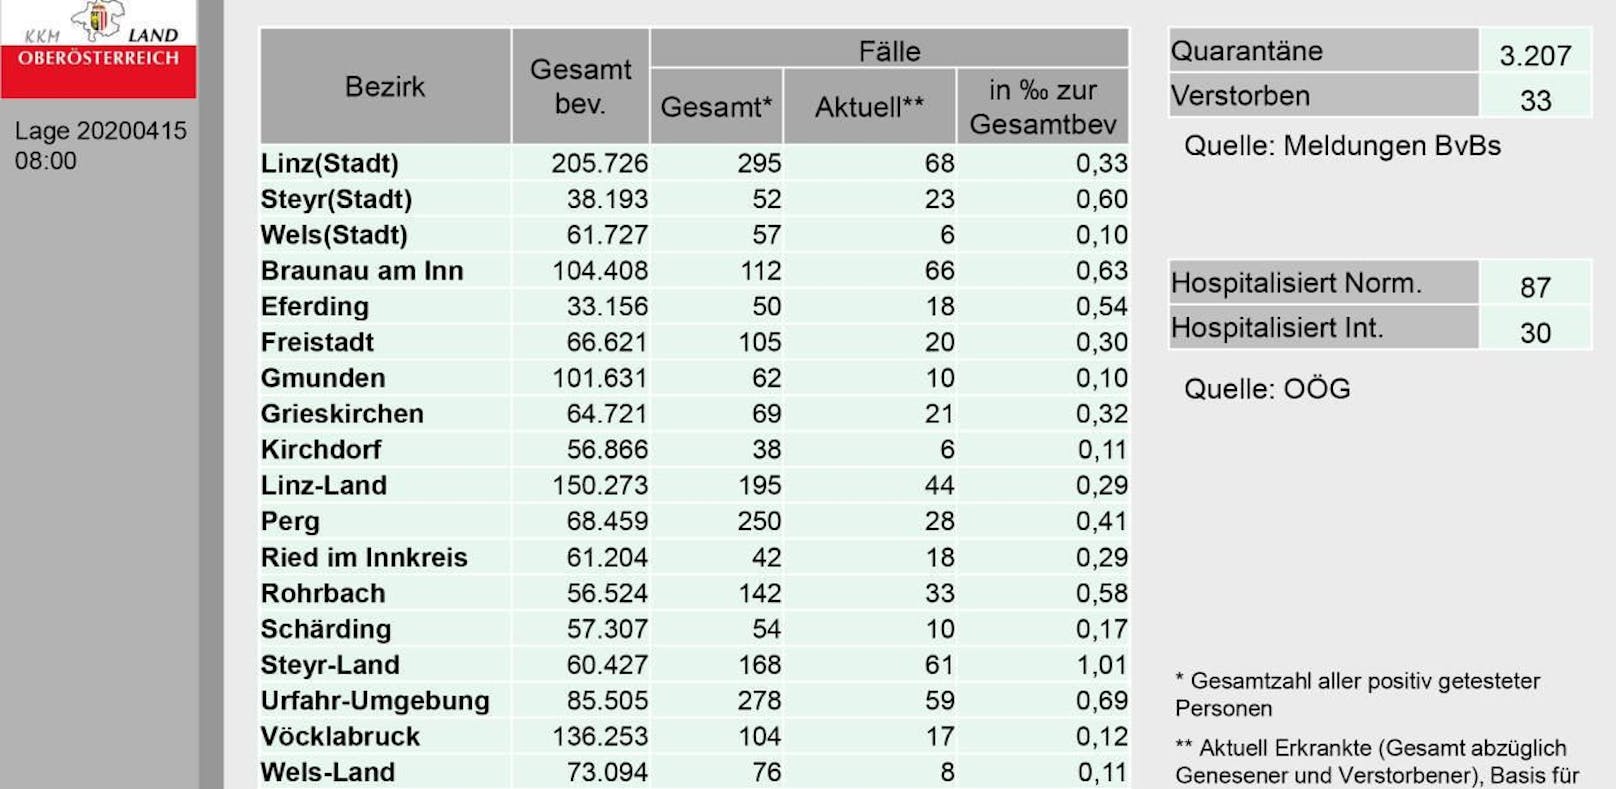 Das sind die aktuellen Zahlen zu den Corona-Erkrankten in Oberösterreich.